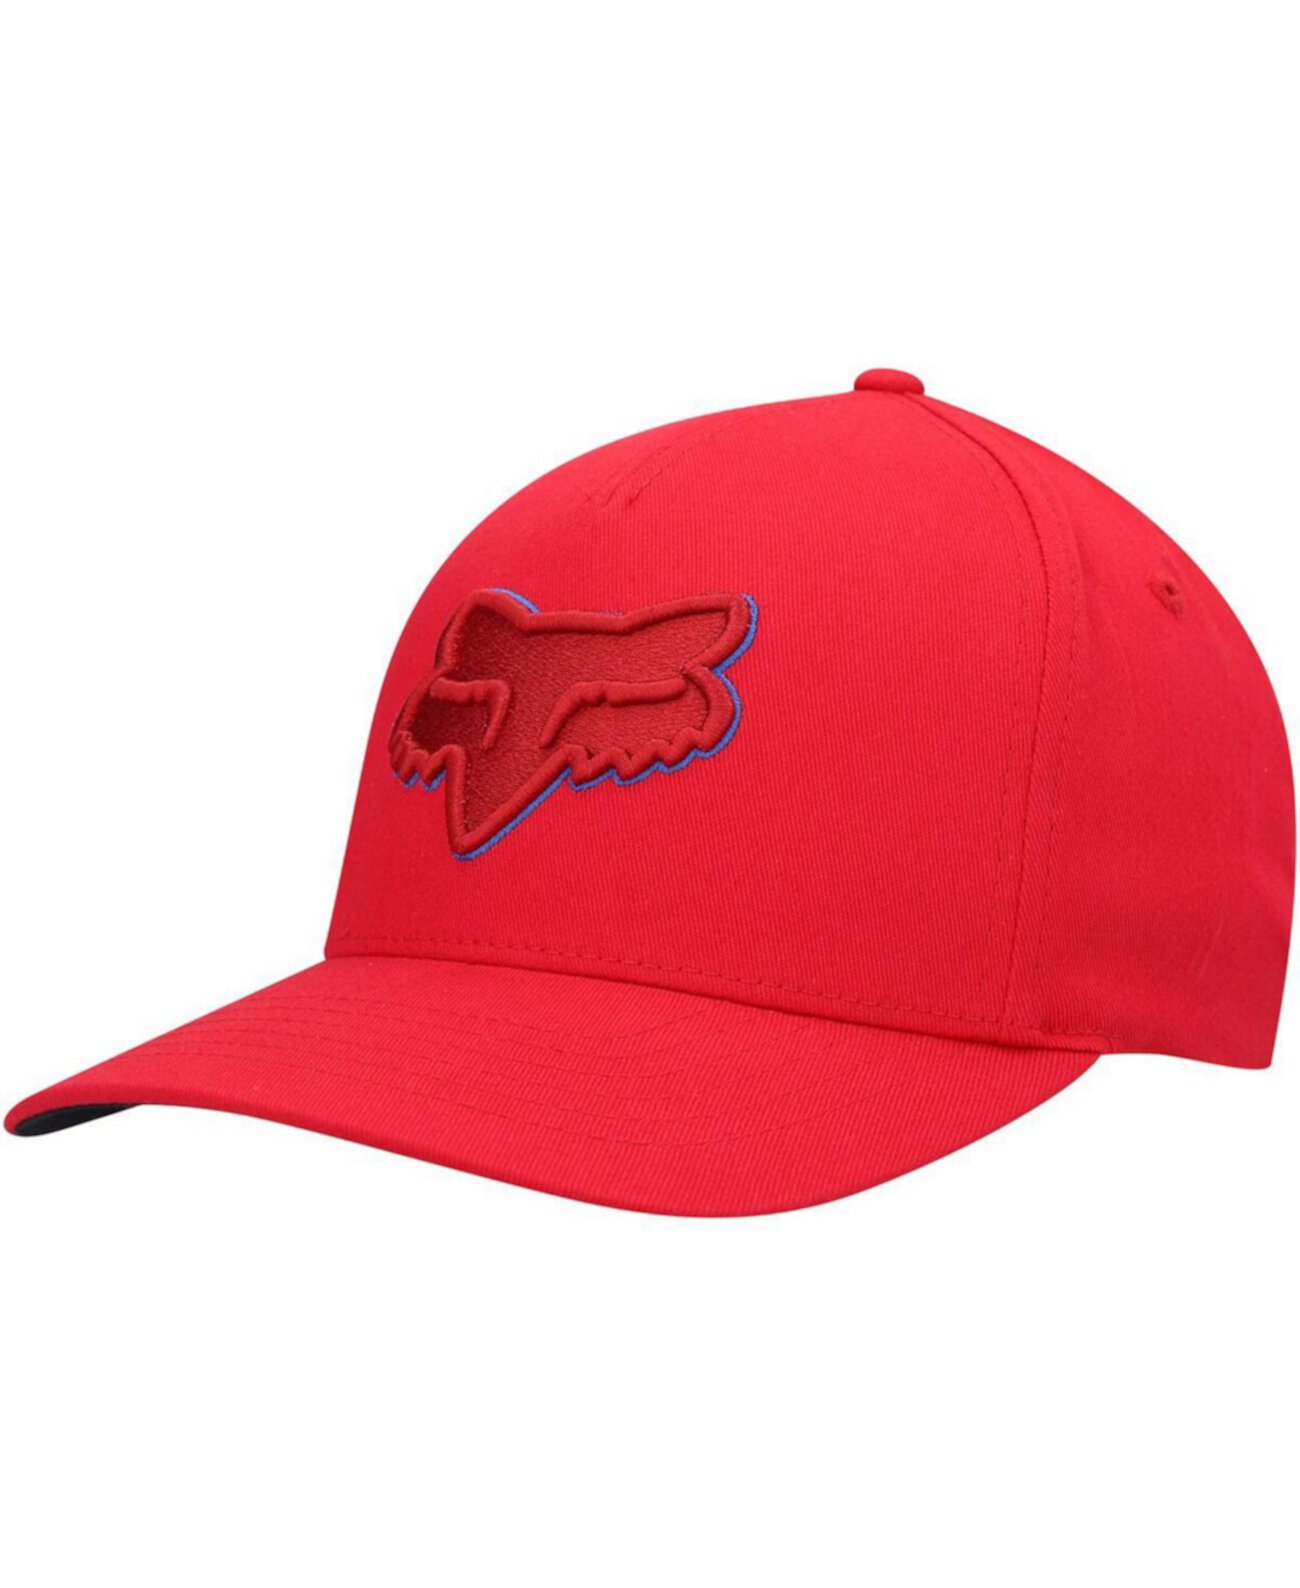 Красная шляпа мужская. Fox Epicycle Flexfit 2.0 hat. Fox цвет